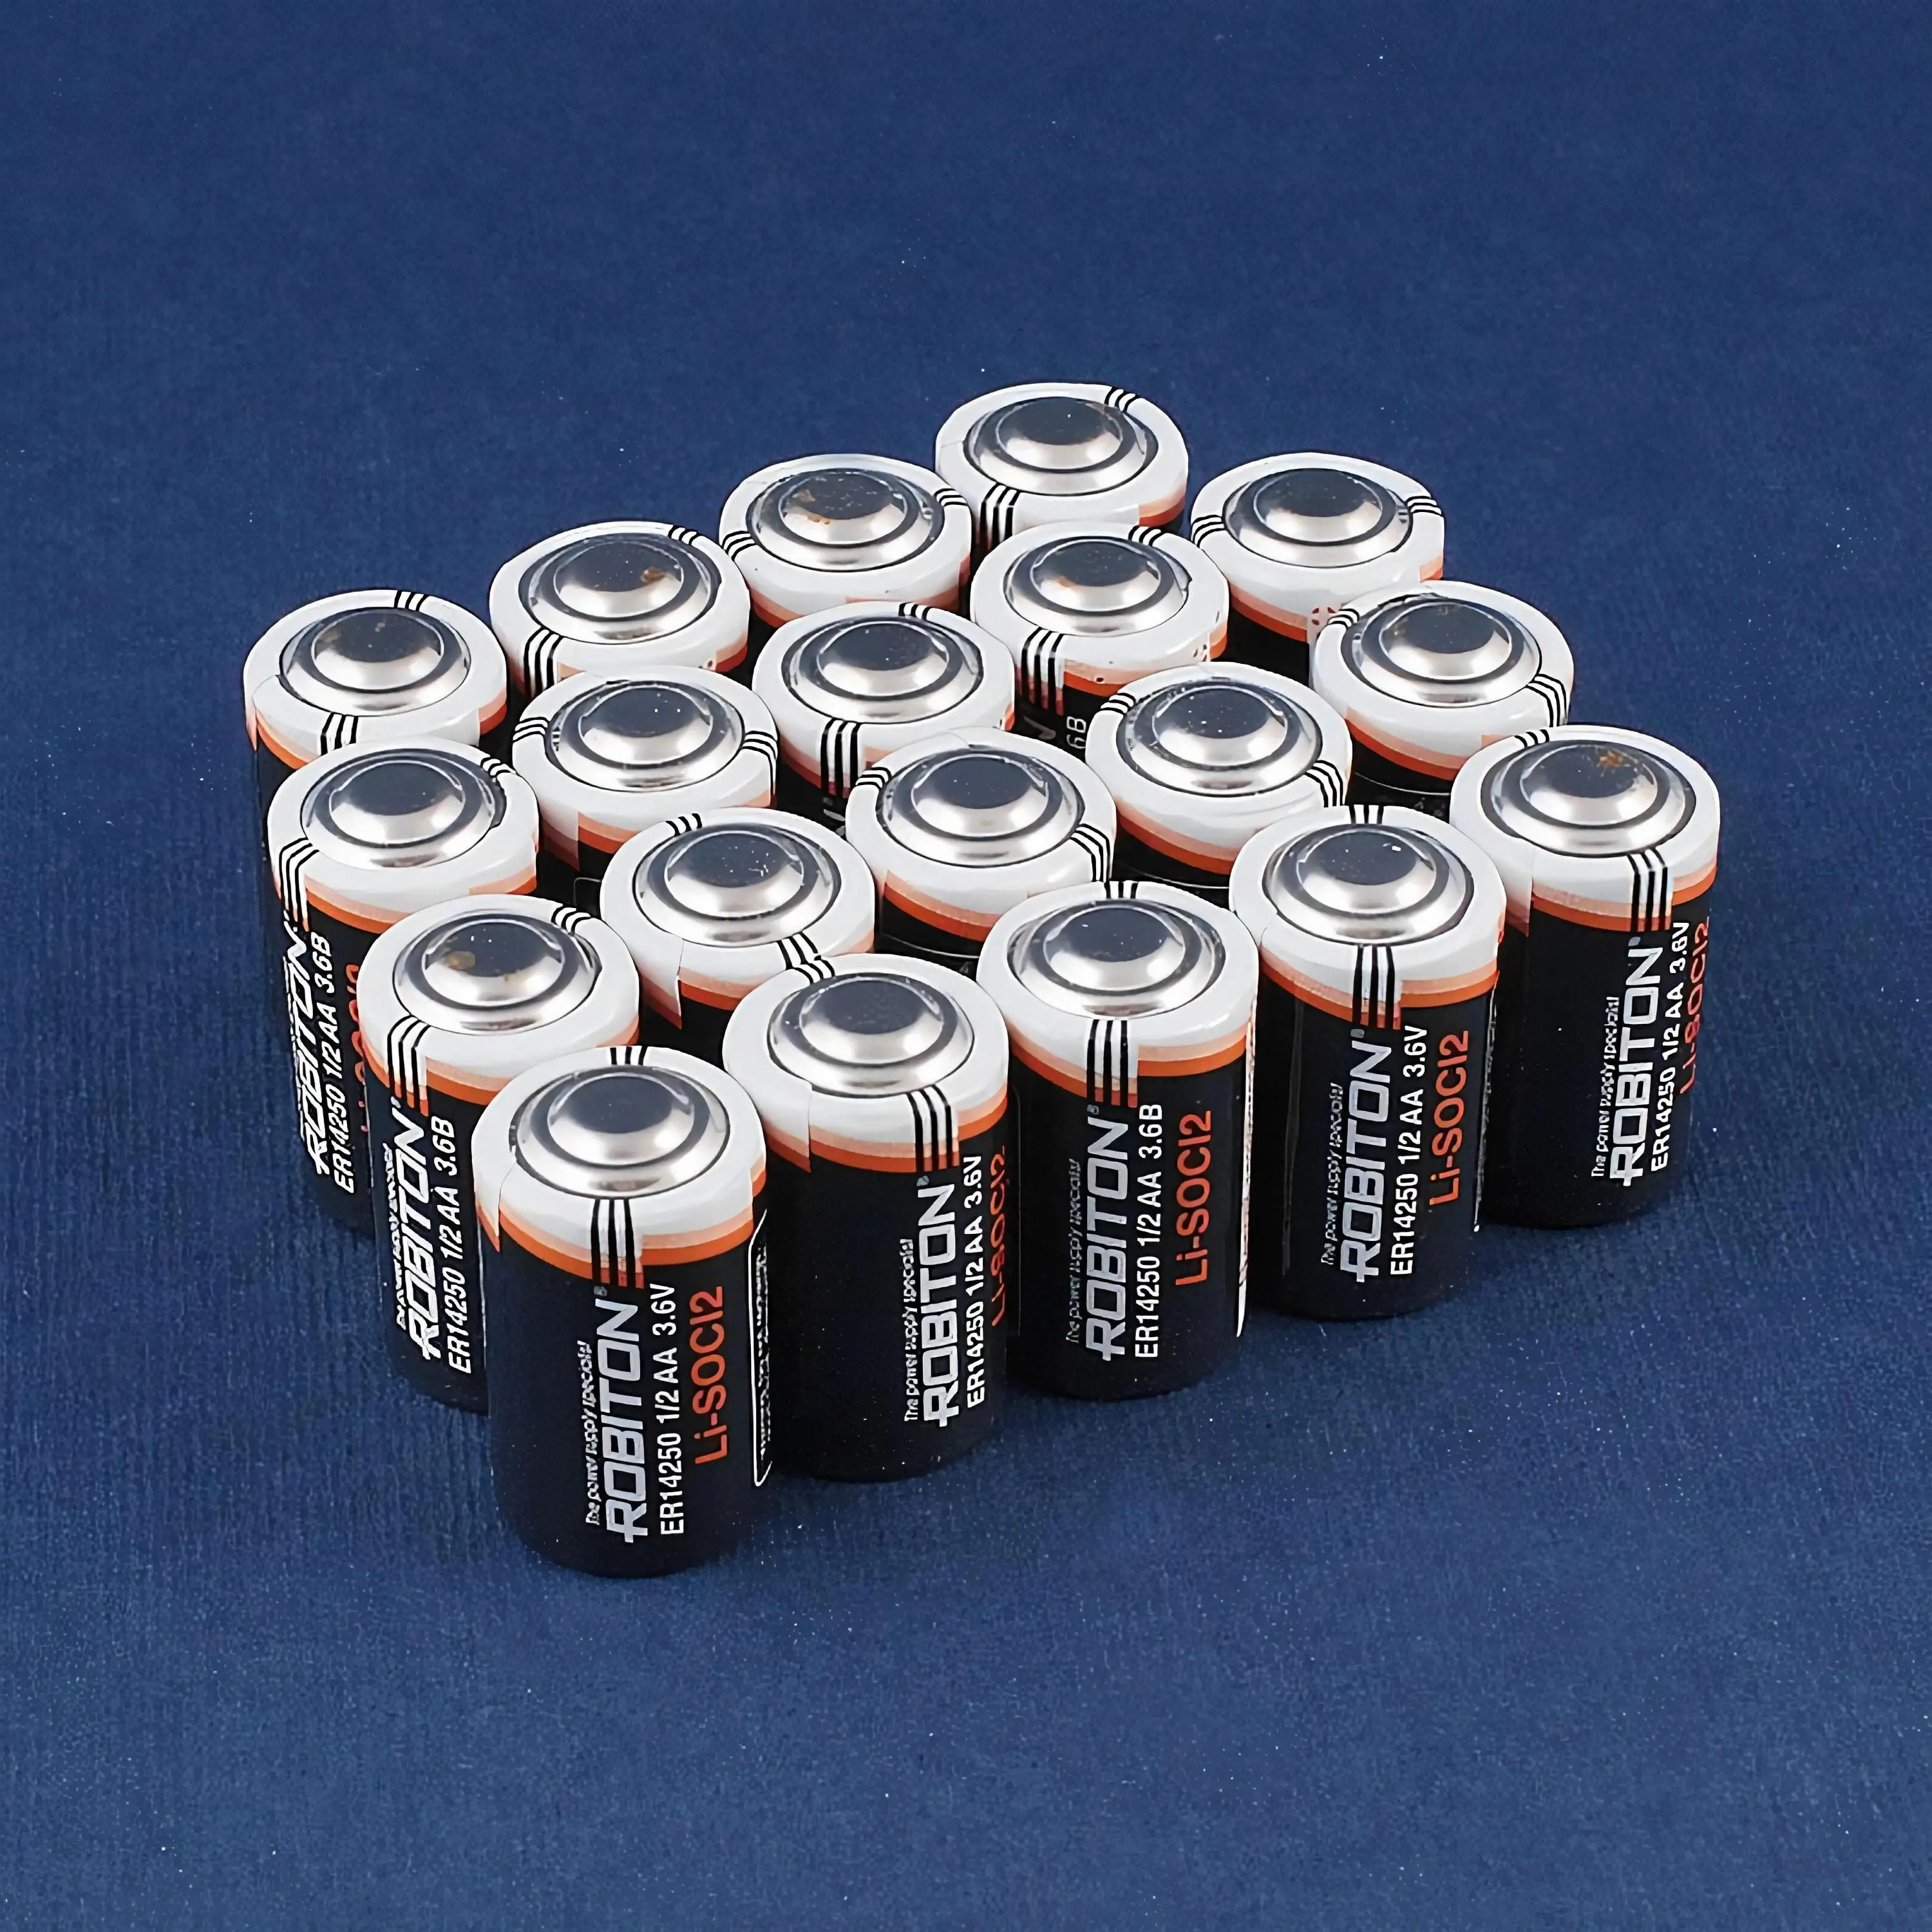 Элемент 3 батареи. Батарейка er14250 3.6v Size 1/2 AA. Батарейки 2аа и 3аа. Батарейка 1/2 AA ДНС. 2aa батарейка.